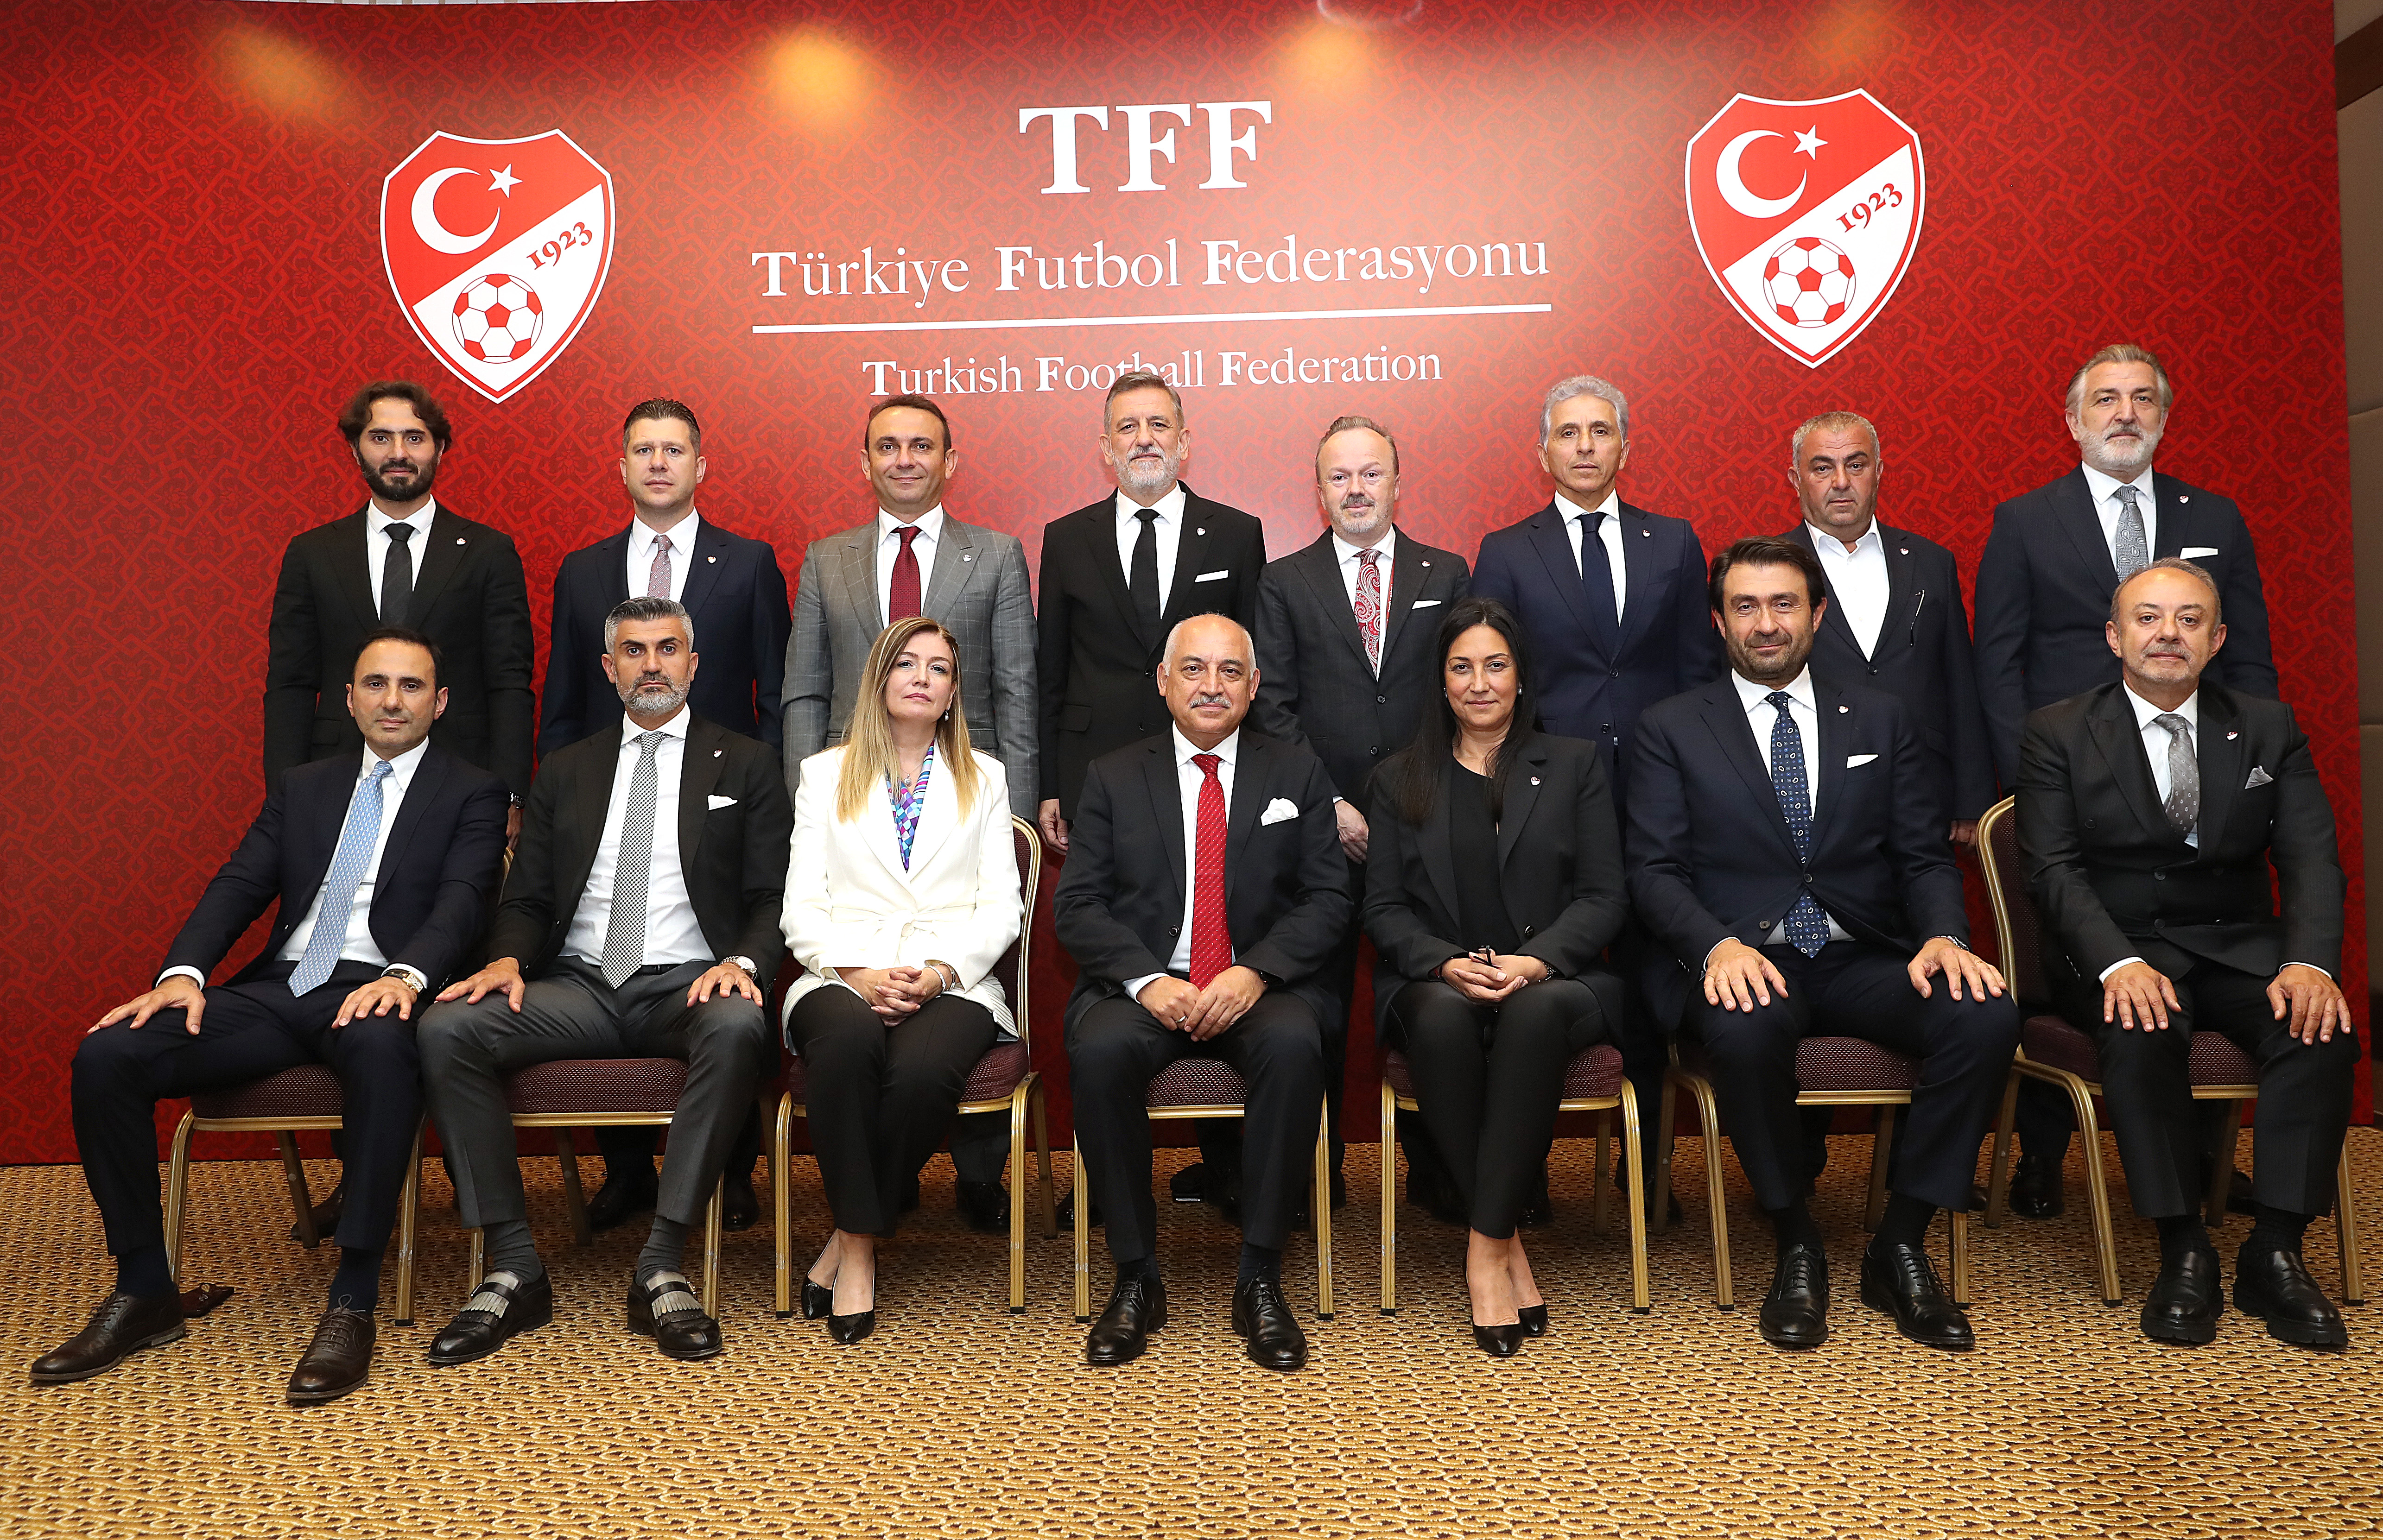 TFF'nin Yeni Başkanı Mehmet BÜYÜKEKŞİ Oldu.